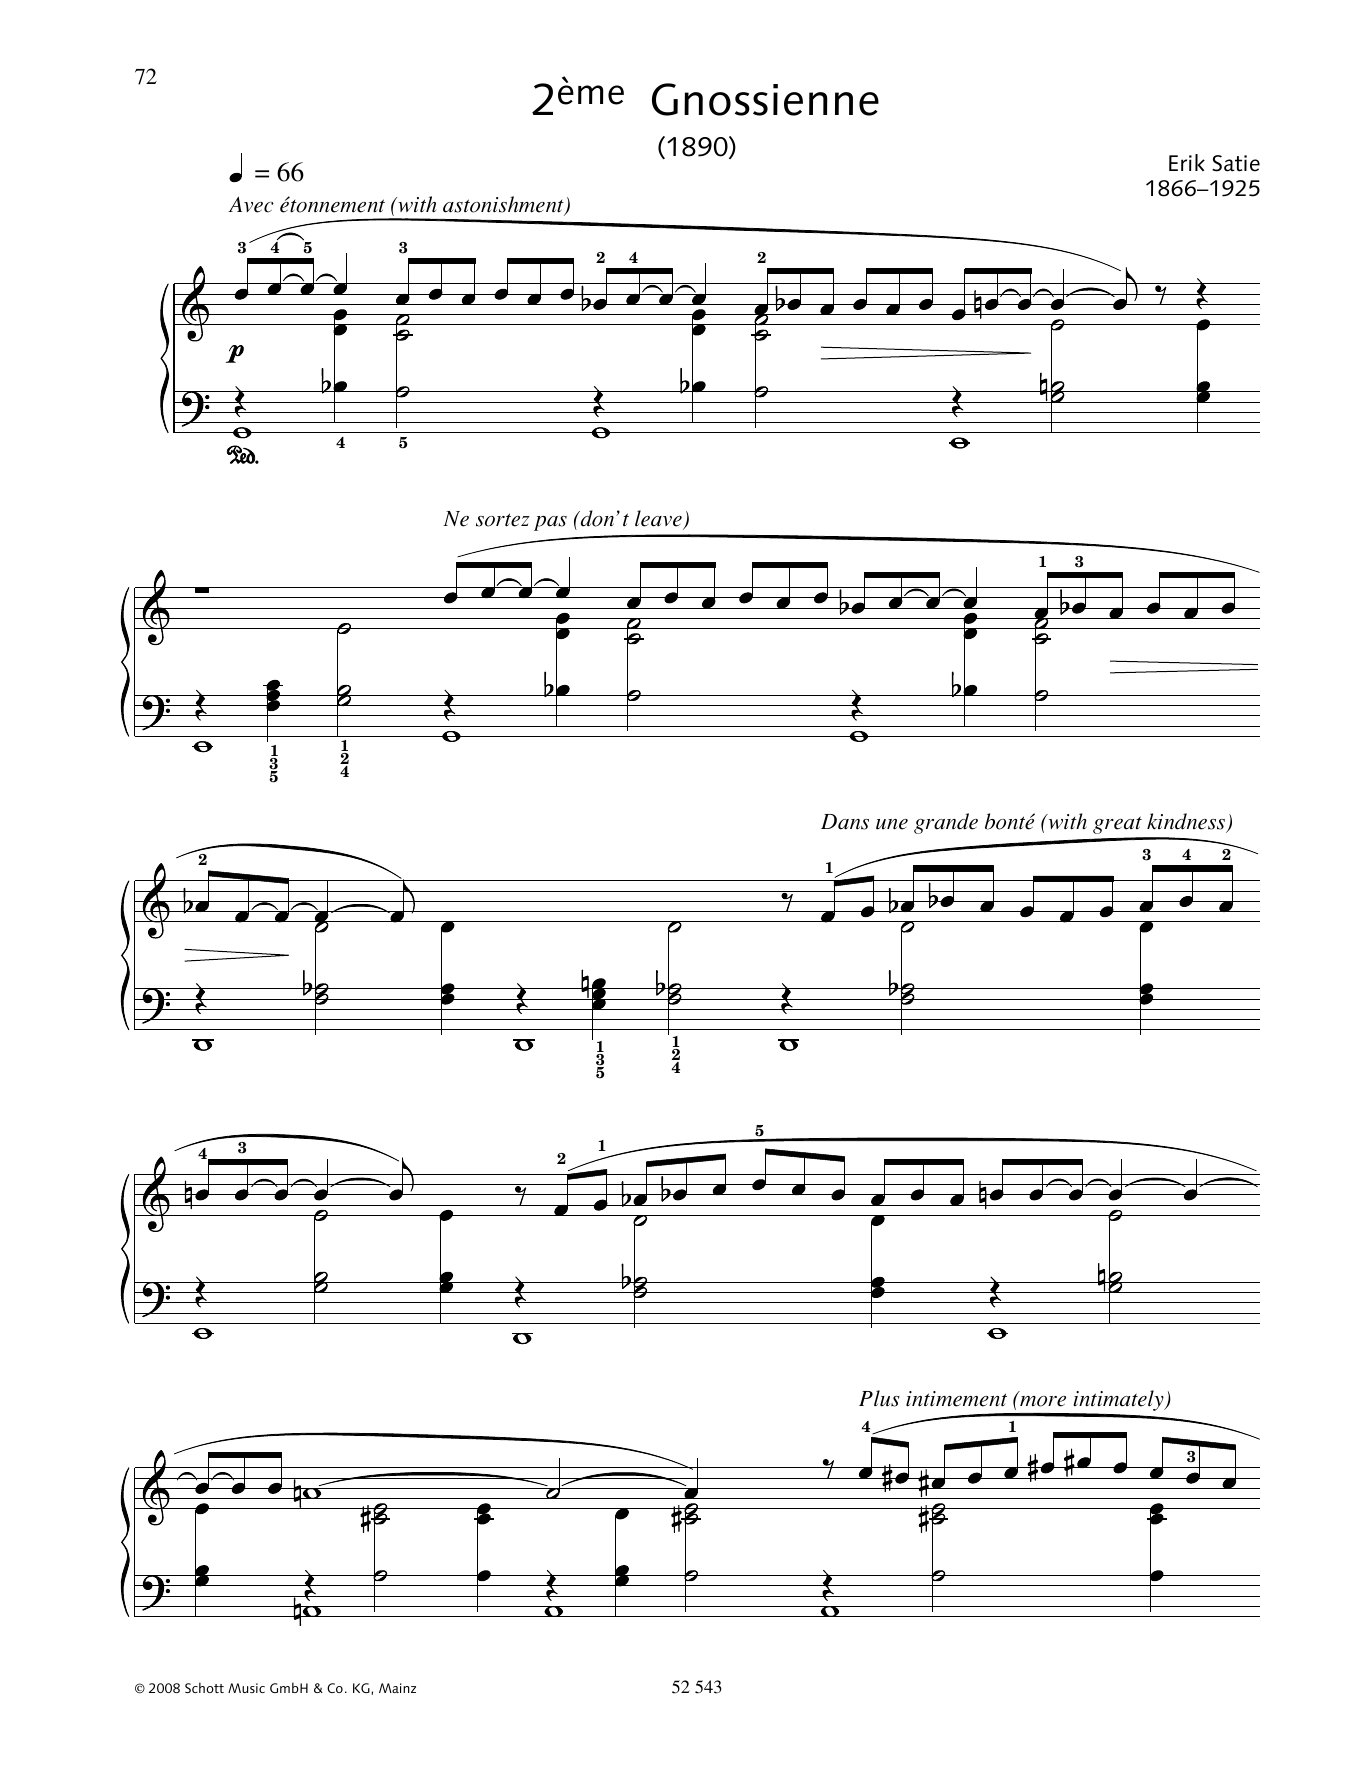 Download Erik Satie 2ème Gnossienne Sheet Music